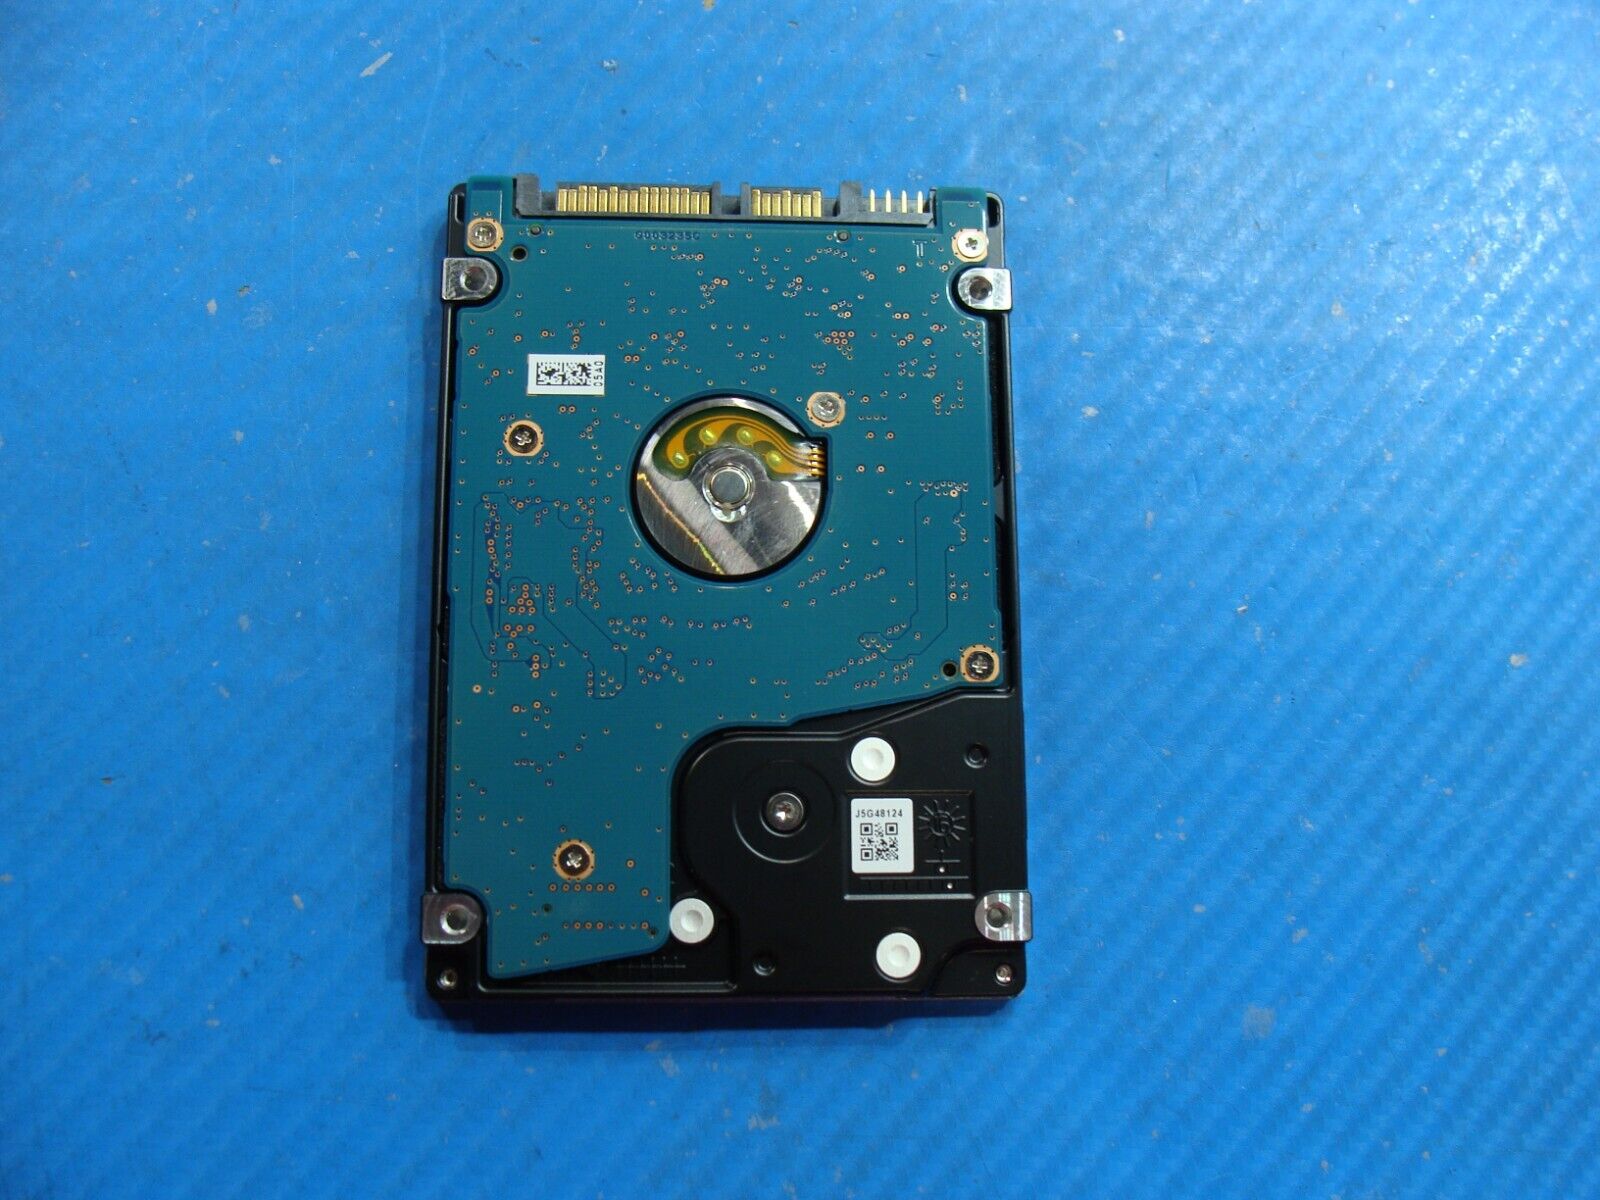 HP 15-f272wm Toshiba 500GB Sata 2.5 HDD Hard Drive MQ01ABF050 669299-001